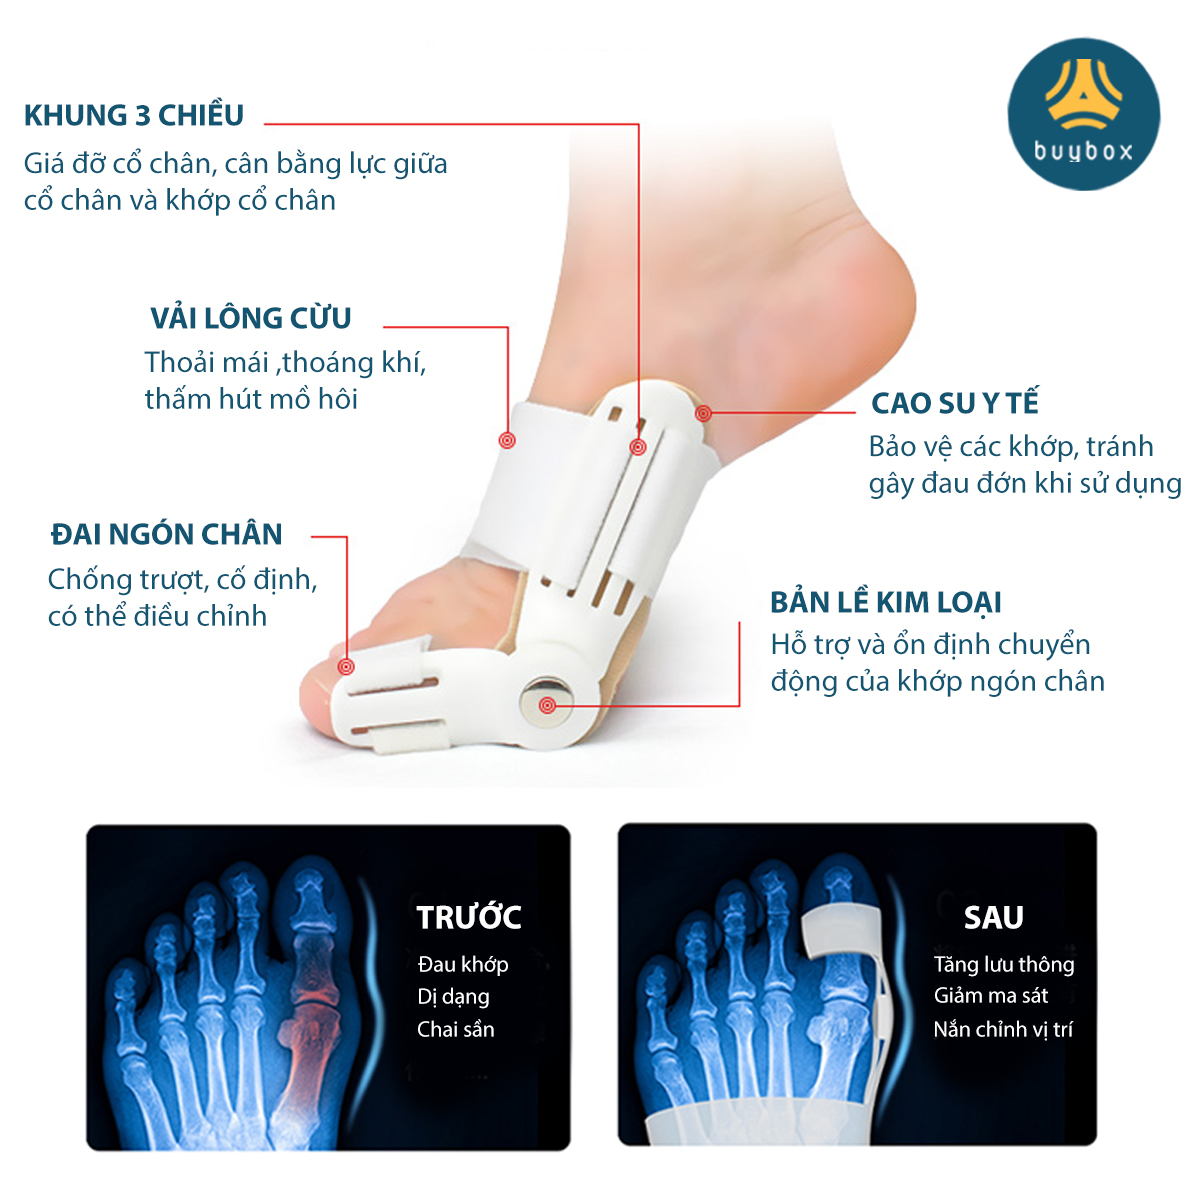 Combo 2 cặp dụng cụ chỉnh hình, bảo vệ ngón chân cái bị vẹo chất liệu nhựa PC và silicone - Buybox